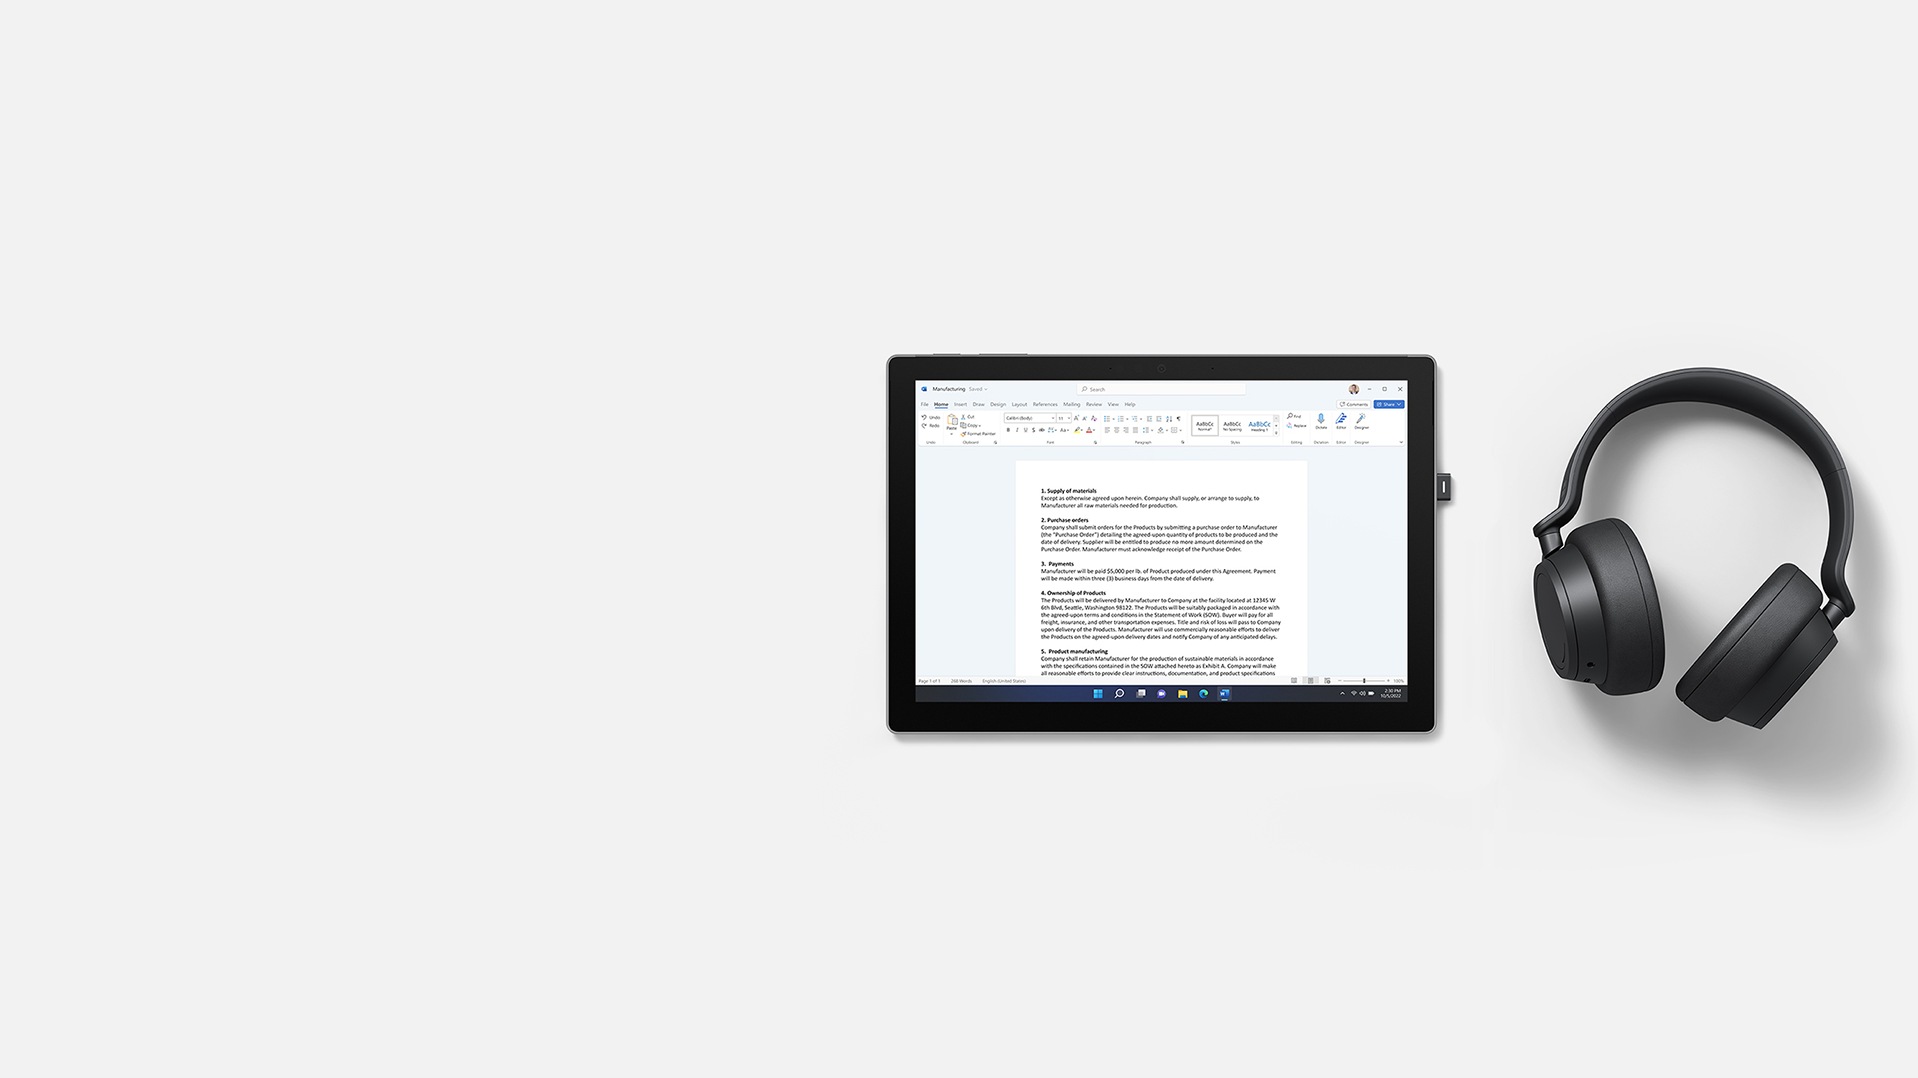 يتوفر مستند Microsoft Word على Surface Pro 7+ مع وضع Surface Headphones 2+ على الجانب الأيمن